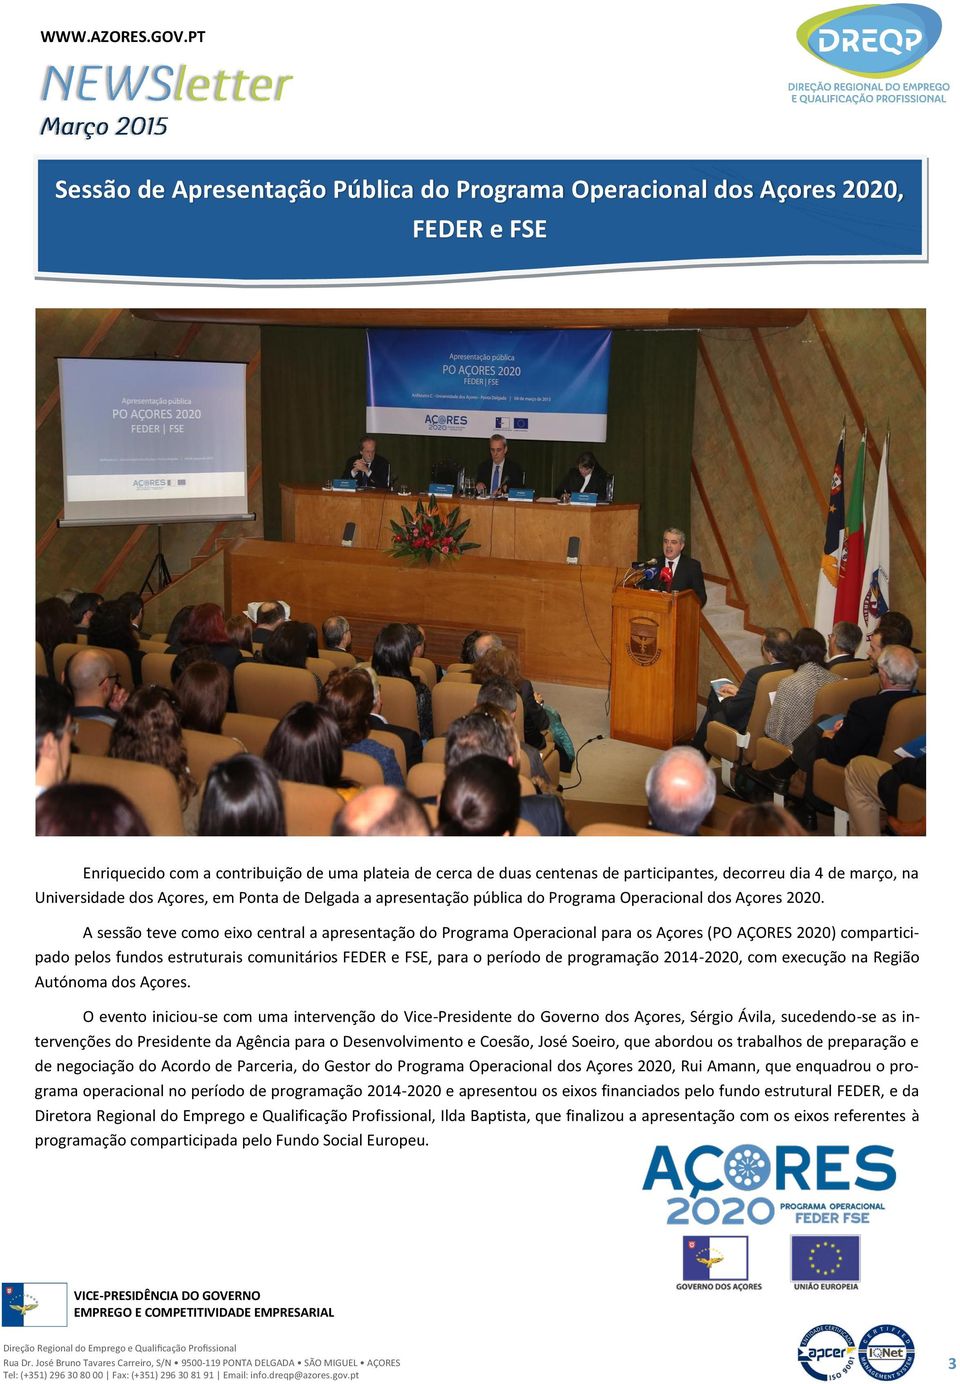 A sessão teve como eixo central a apresentação do Programa Operacional para os Açores (PO AÇORES 2020) comparticipado pelos fundos estruturais comunitários FEDER e FSE, para o período de programação